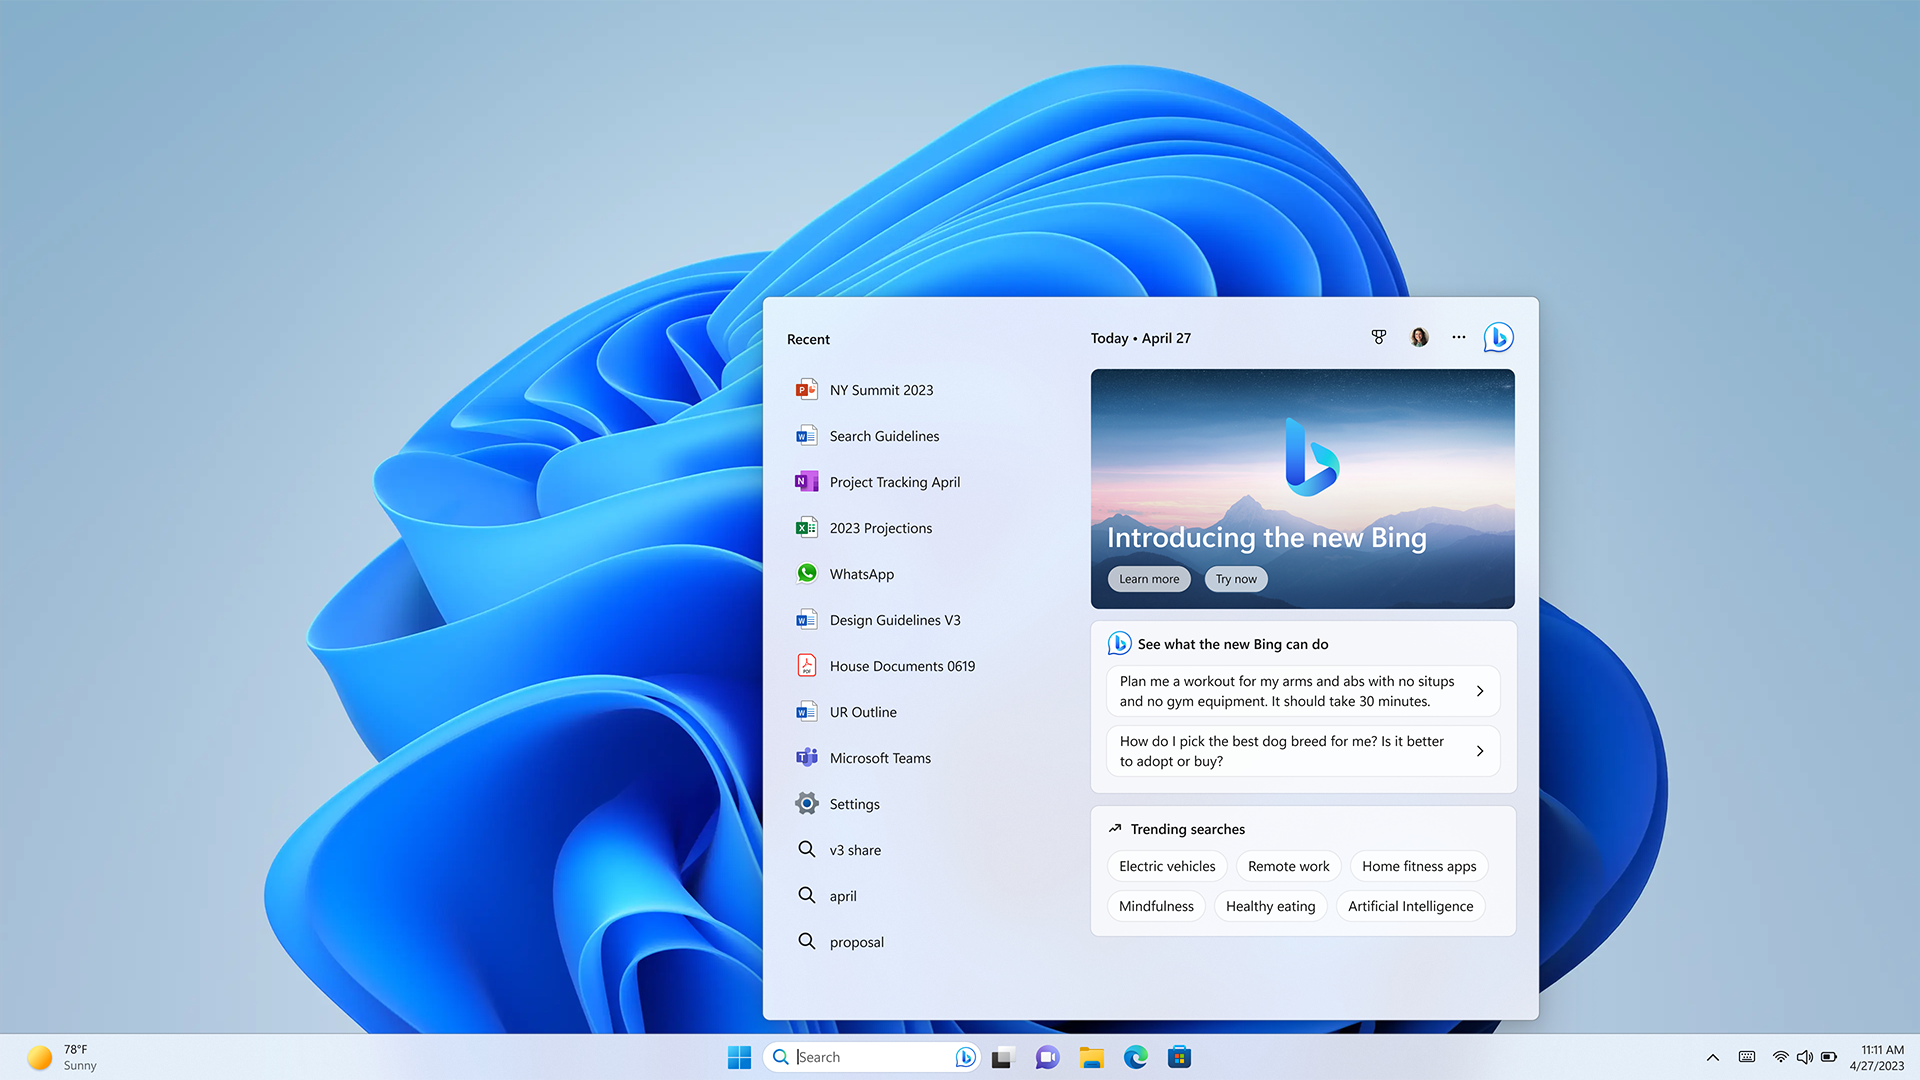 Tela inicial do Windows 11 com o novo módulo do Bing exibido